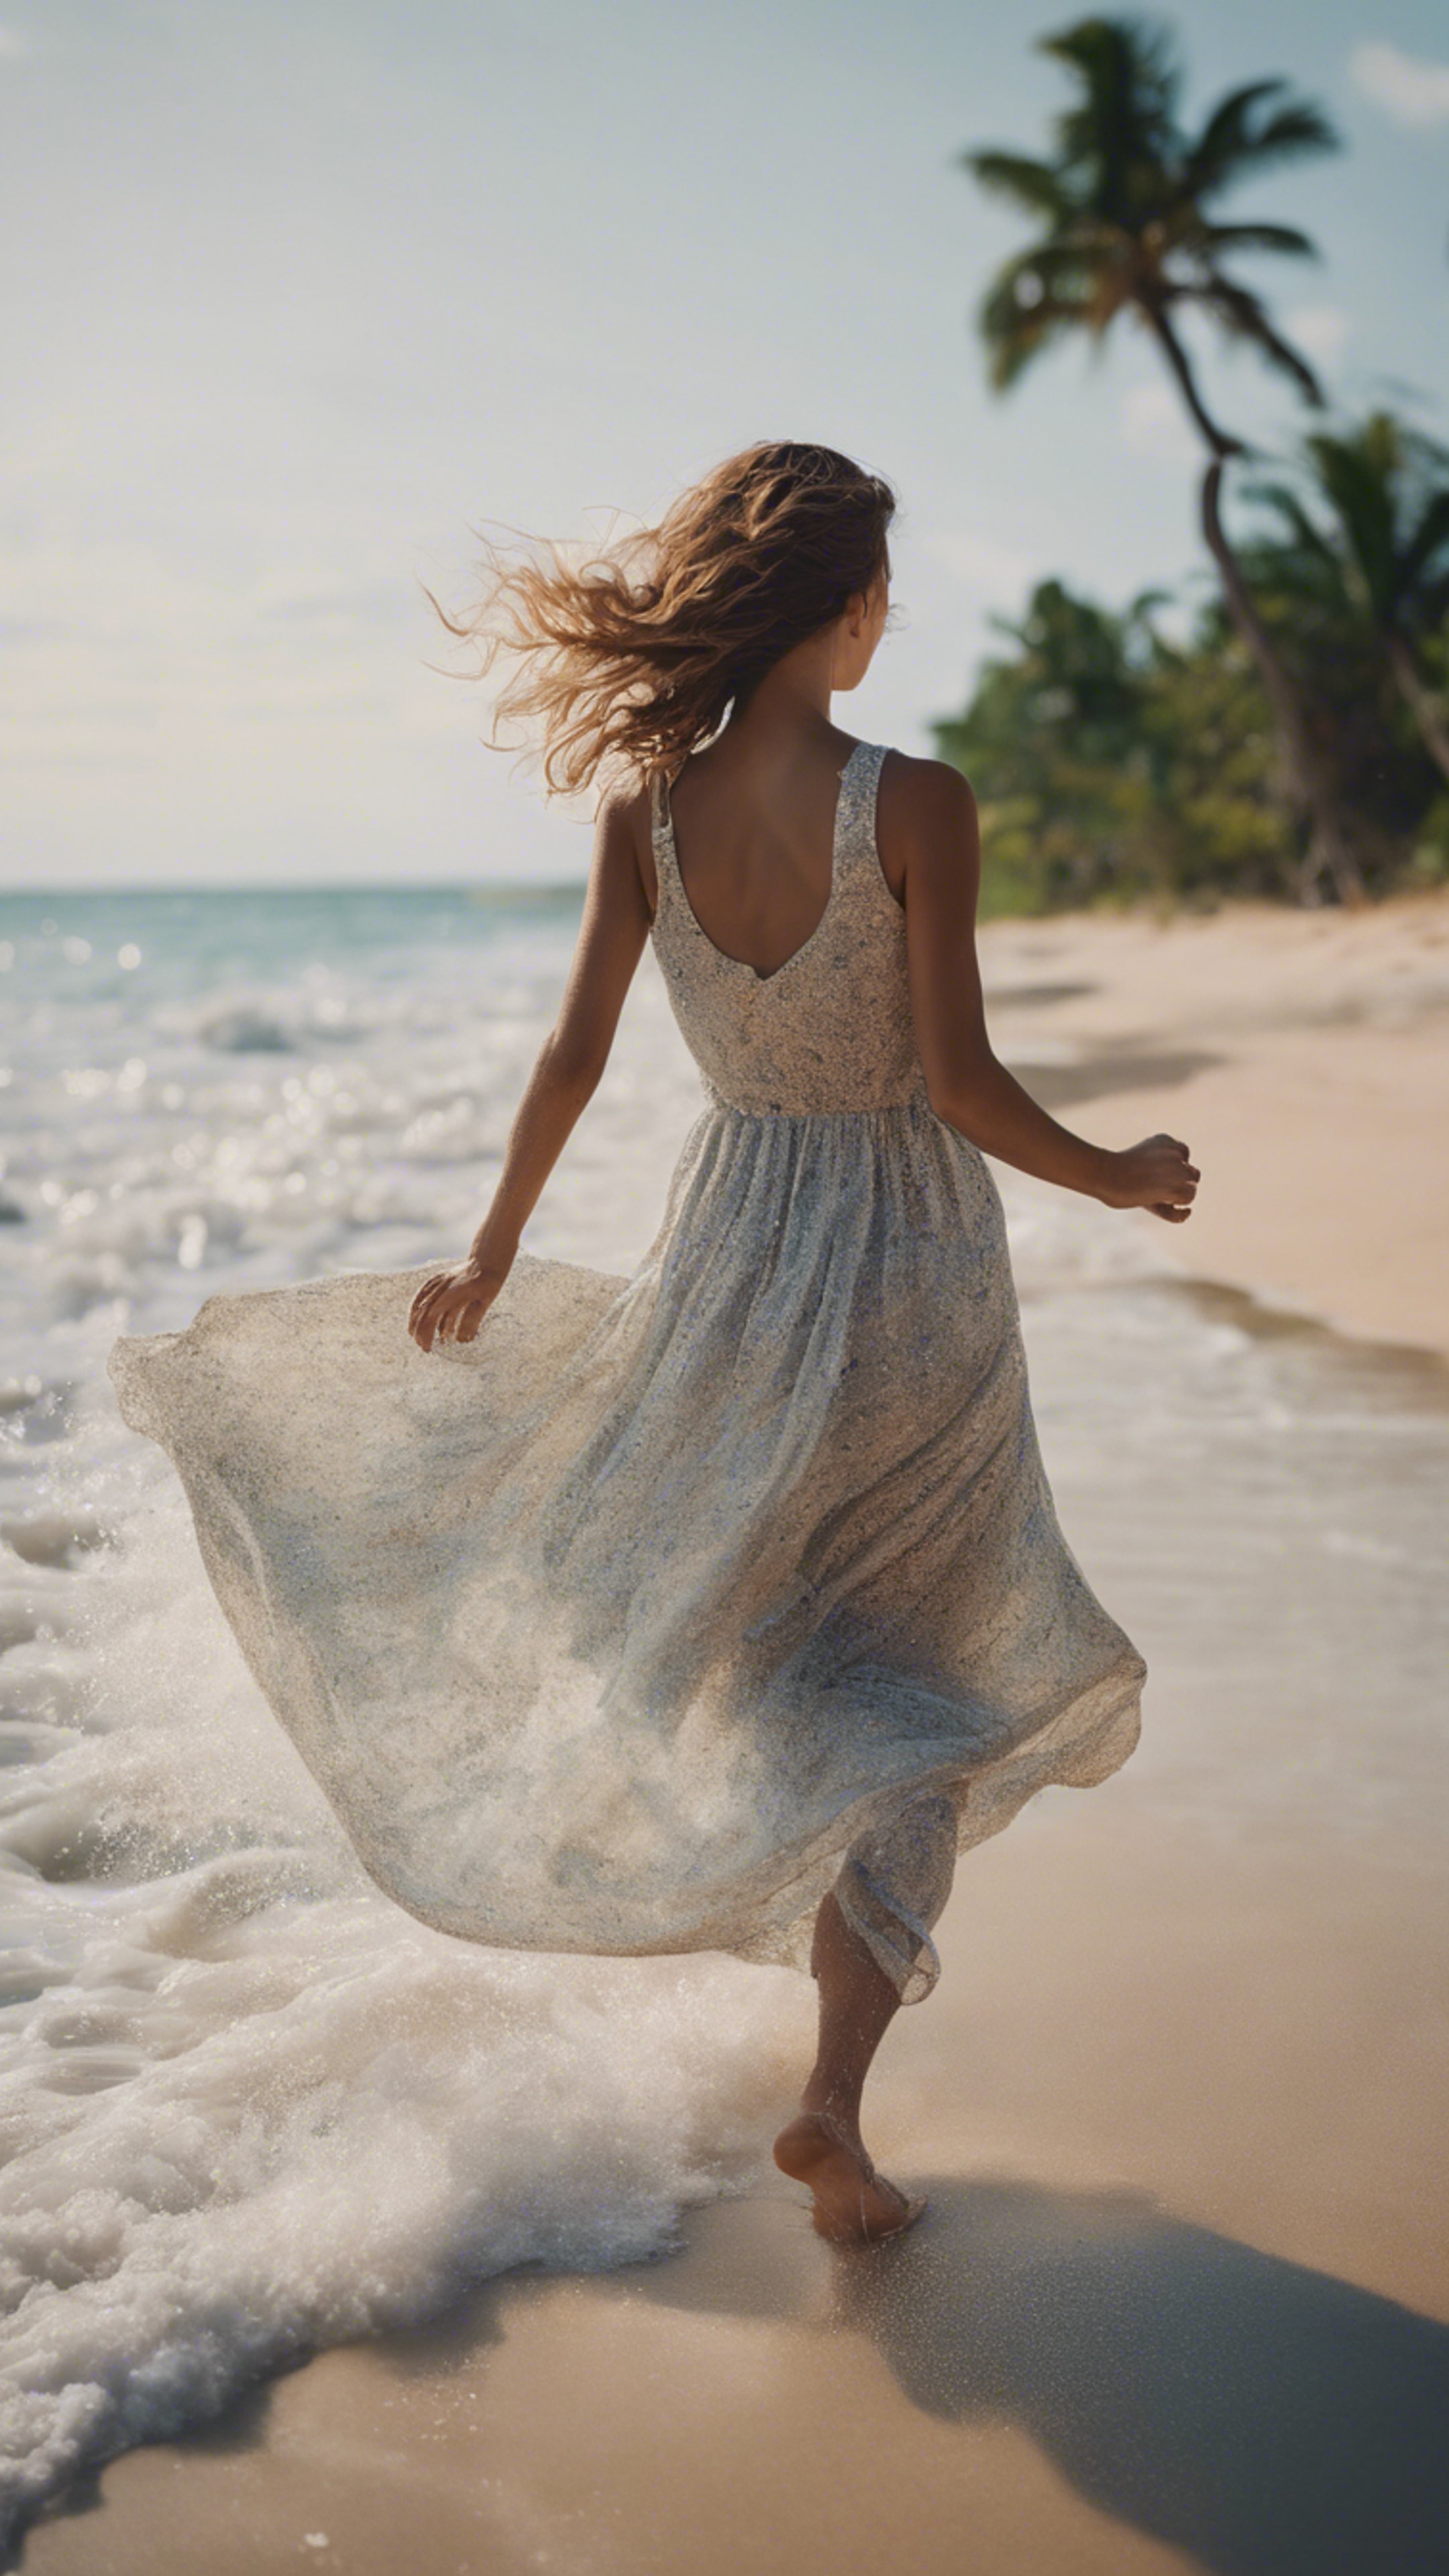 A girl in a flowy dress running alongside the sea at a tropical beach. Behang[6de970100921406193d7]